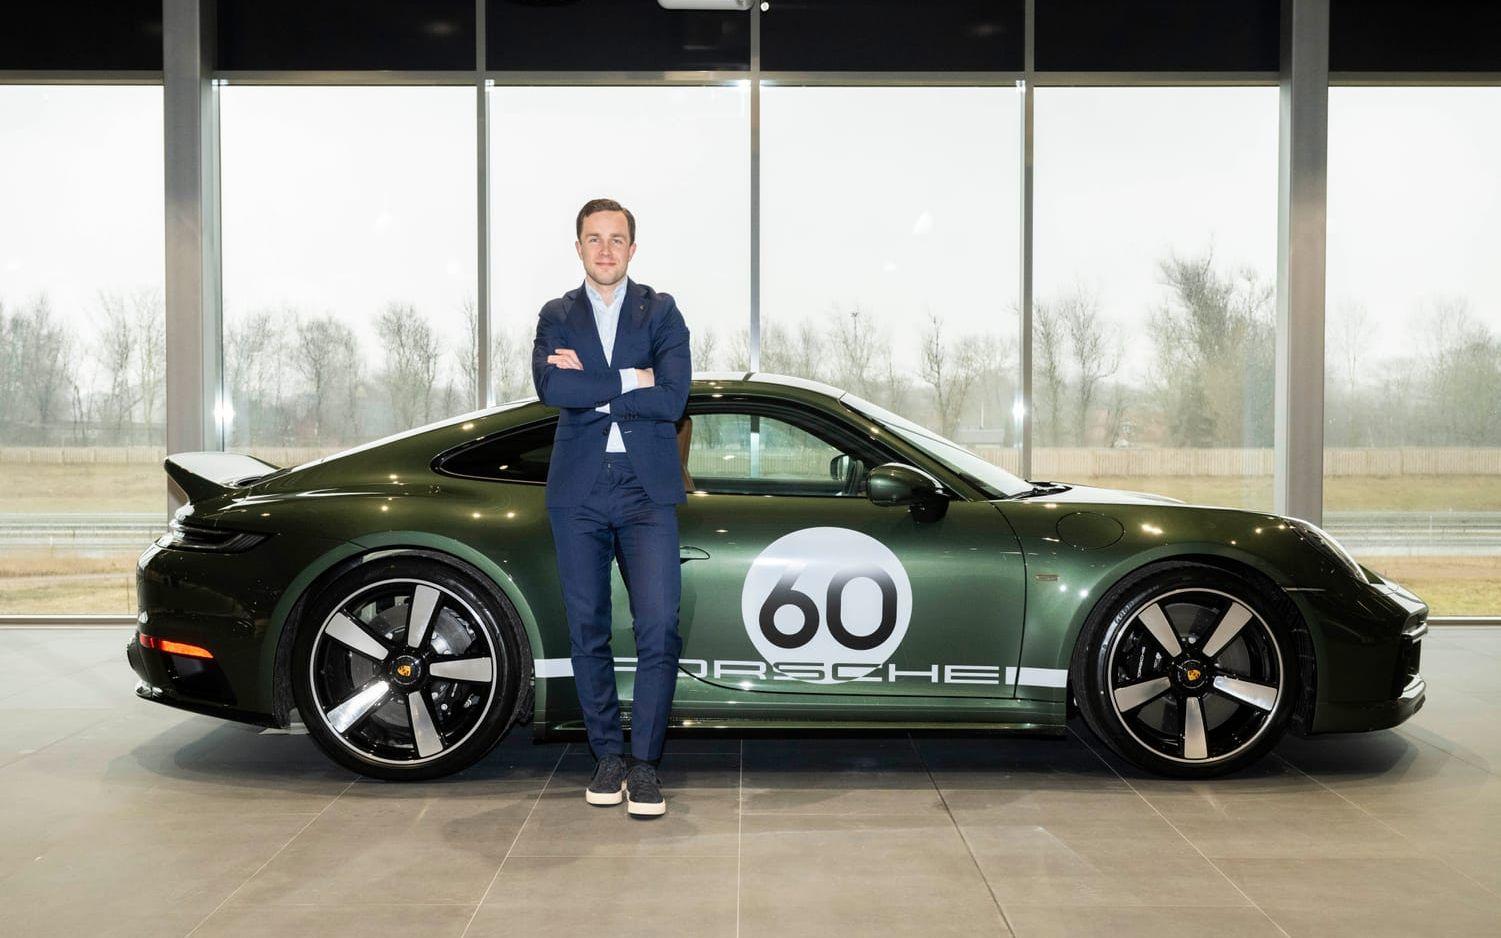 Fredag den 31 mars slår Porsche upp dörrarna till sitt nya center i Halmstad. Platschef Fredrik Andersson ser fram emot att få visa upp både nybygget och ett flertal exklusiva bilar. Som den här, en 911 Sport Classic i limiterad upplaga.